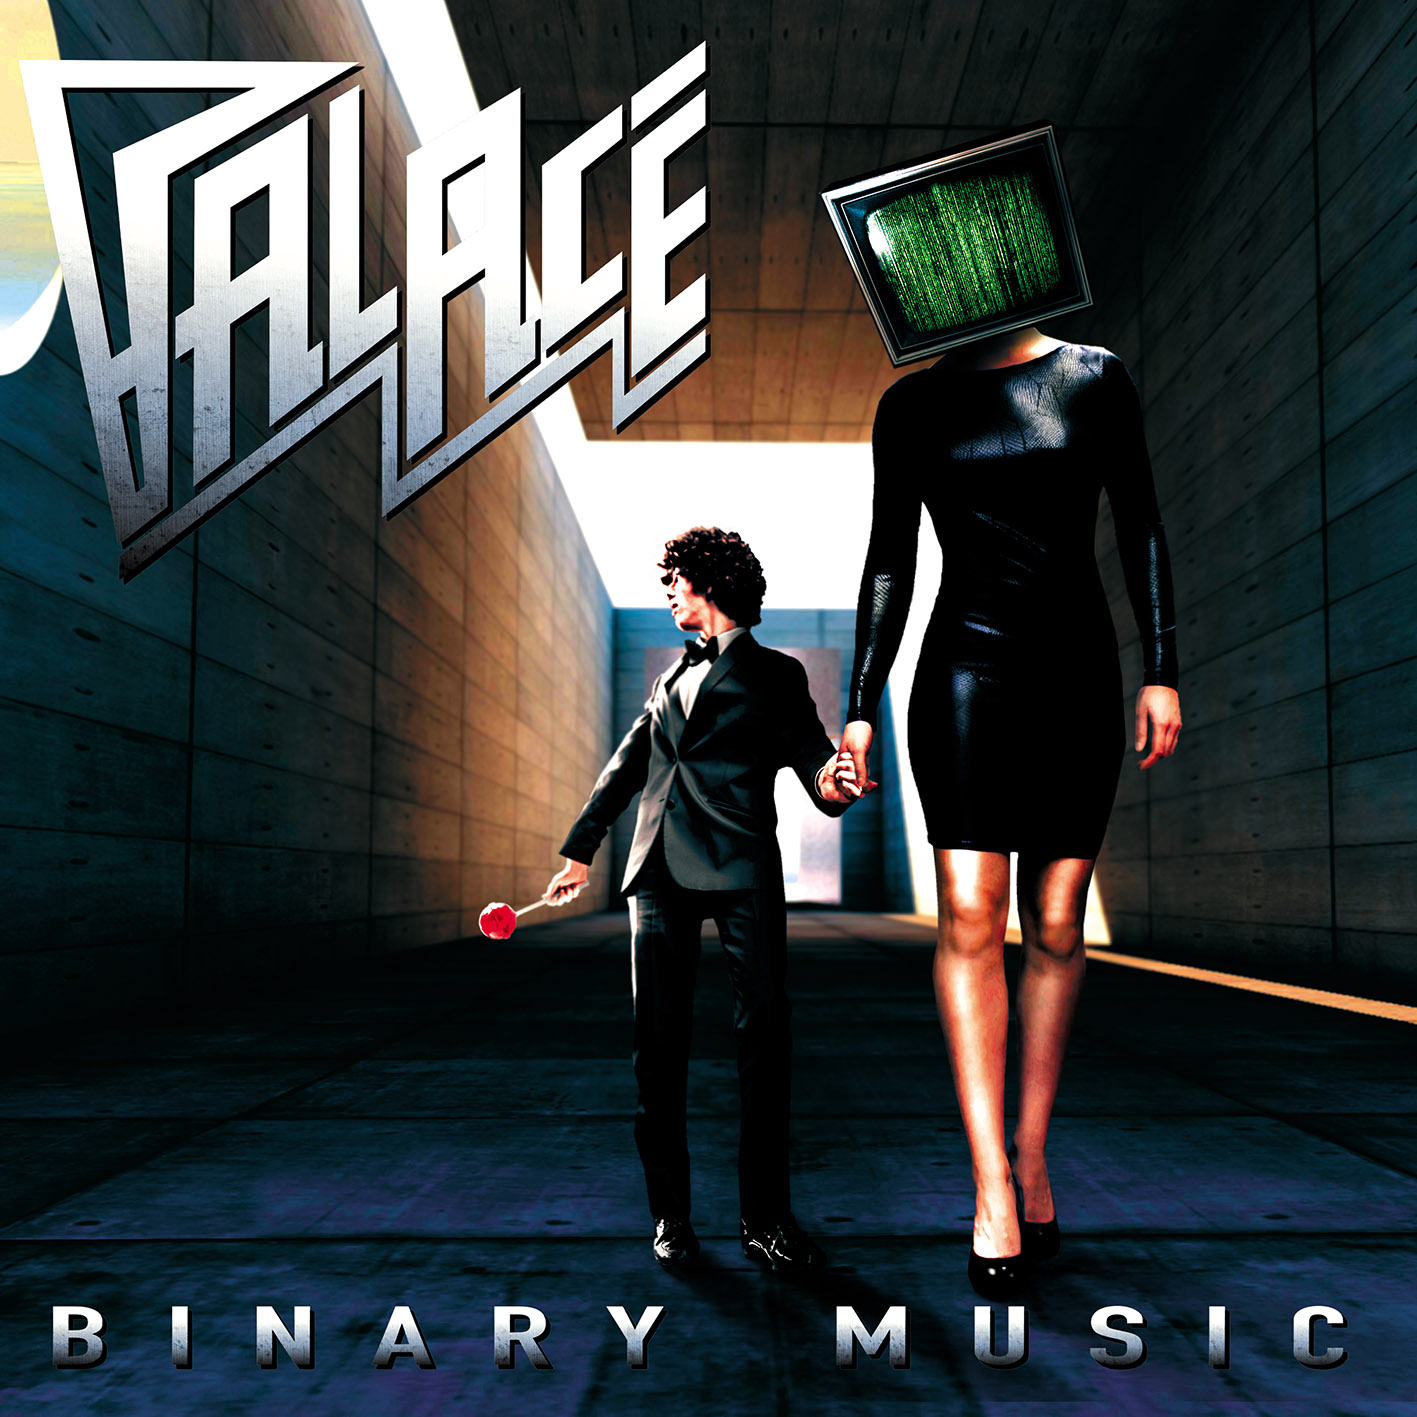 Palace - “Binary Music”